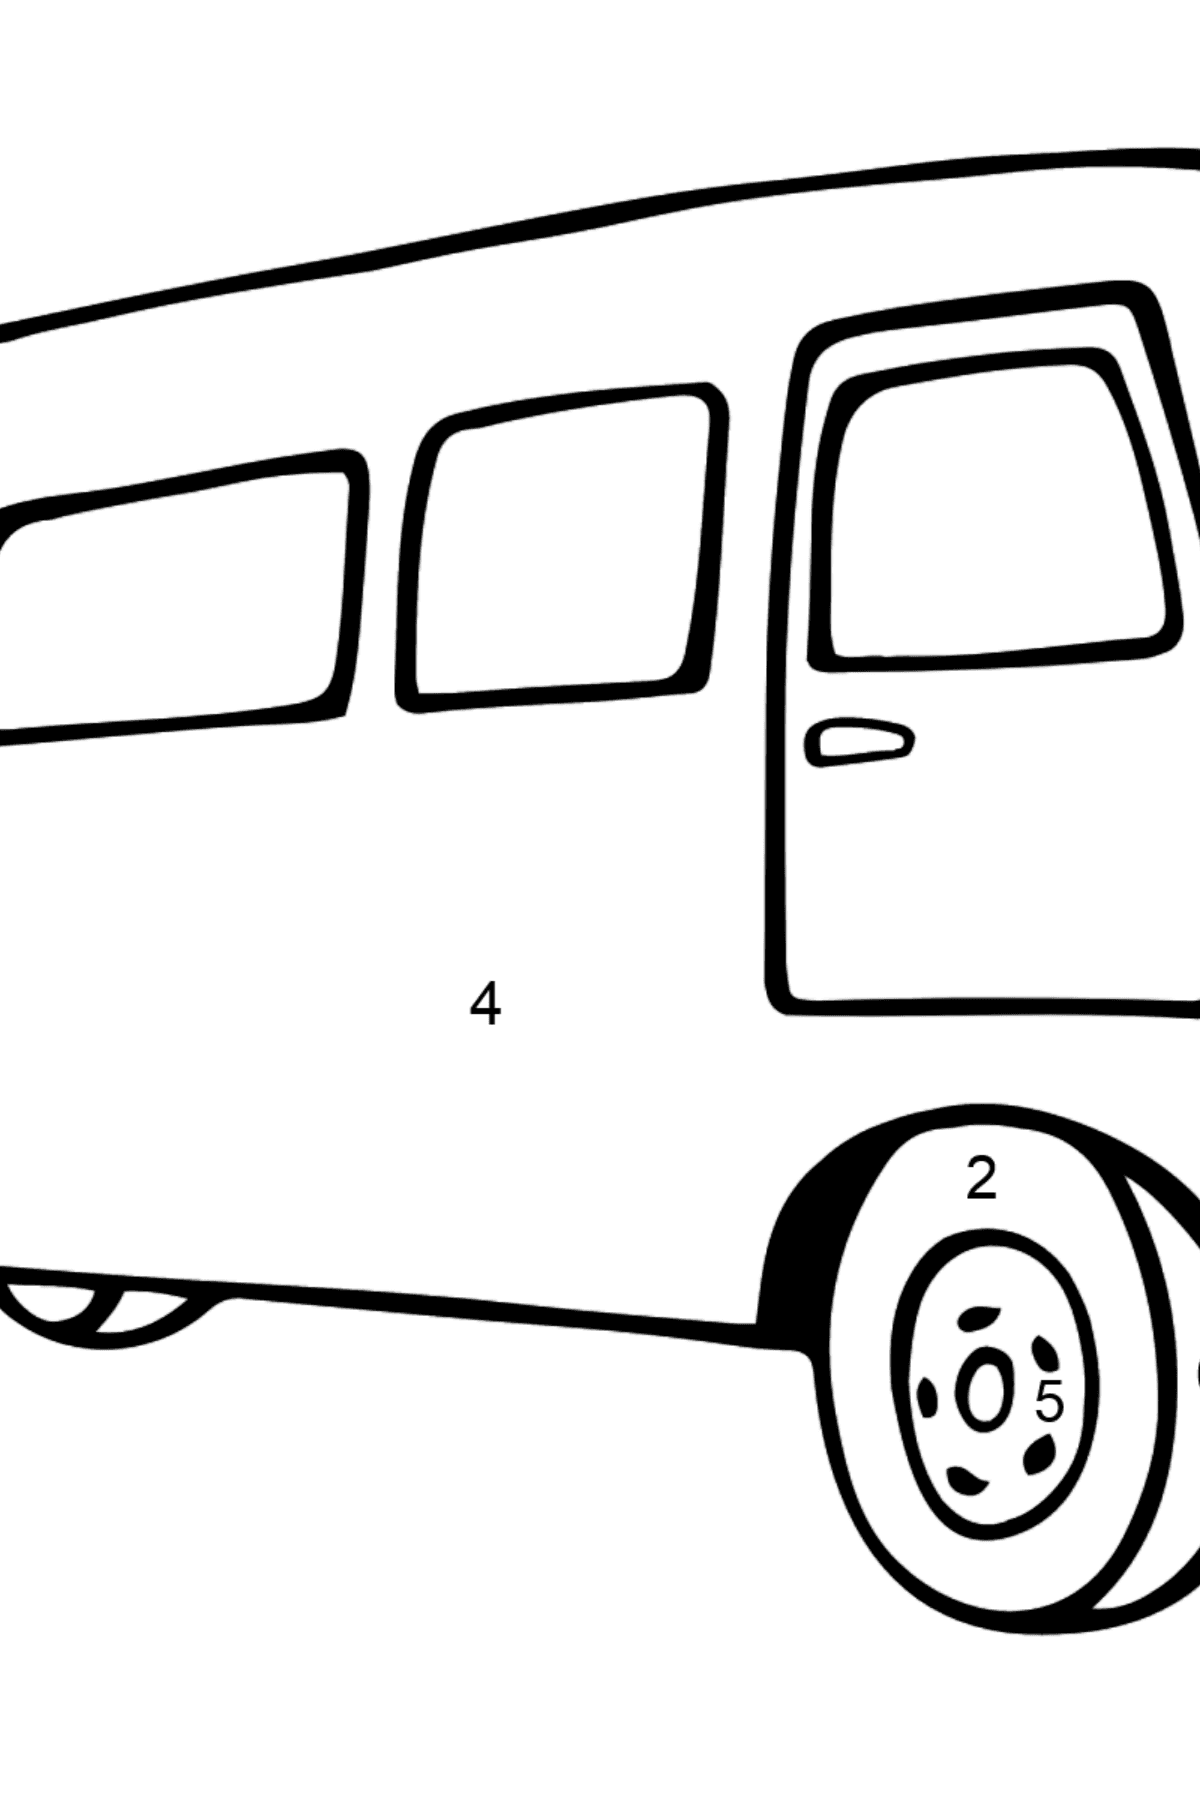 Coloriage - Un bus joyeux - Coloriage par Chiffres pour les Enfants